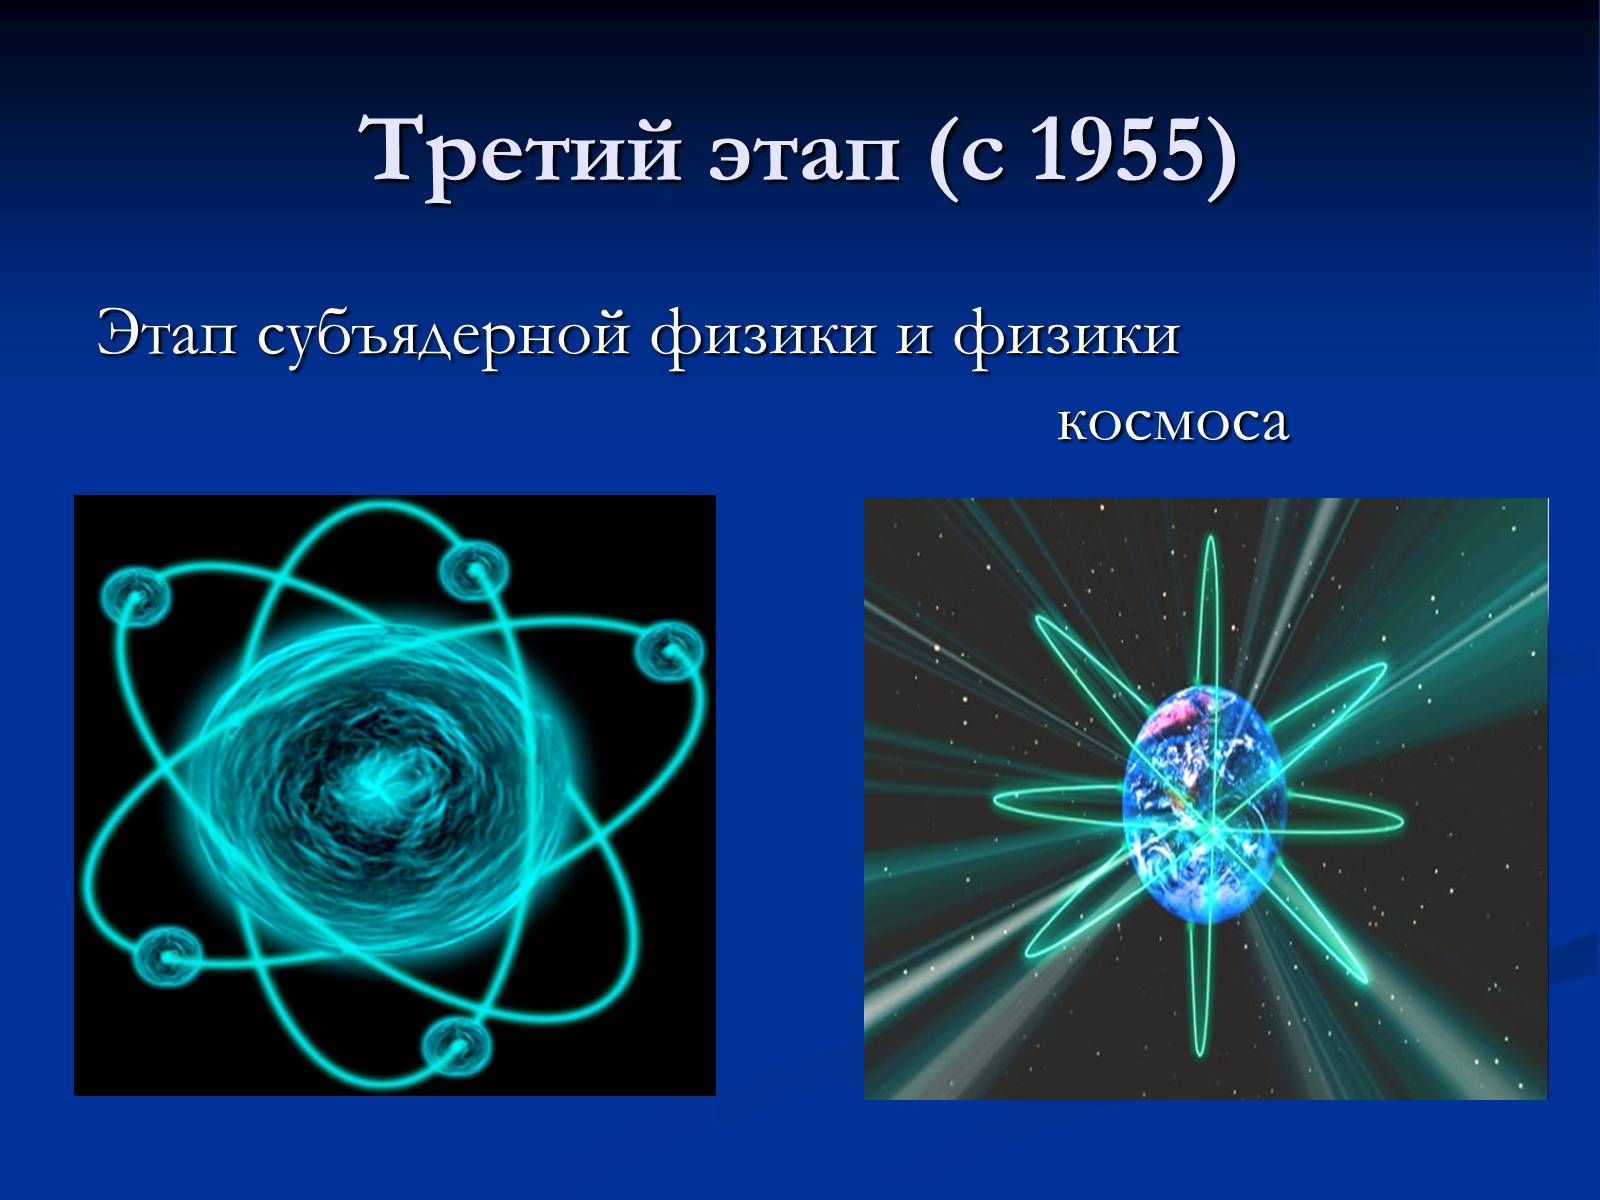 Трех элементарных частиц. Этапы развития физики элементарных частиц. Три этапа в развитии физики элементарных частиц. История развития физики. Первый этап в развитии физики элементарных частиц.